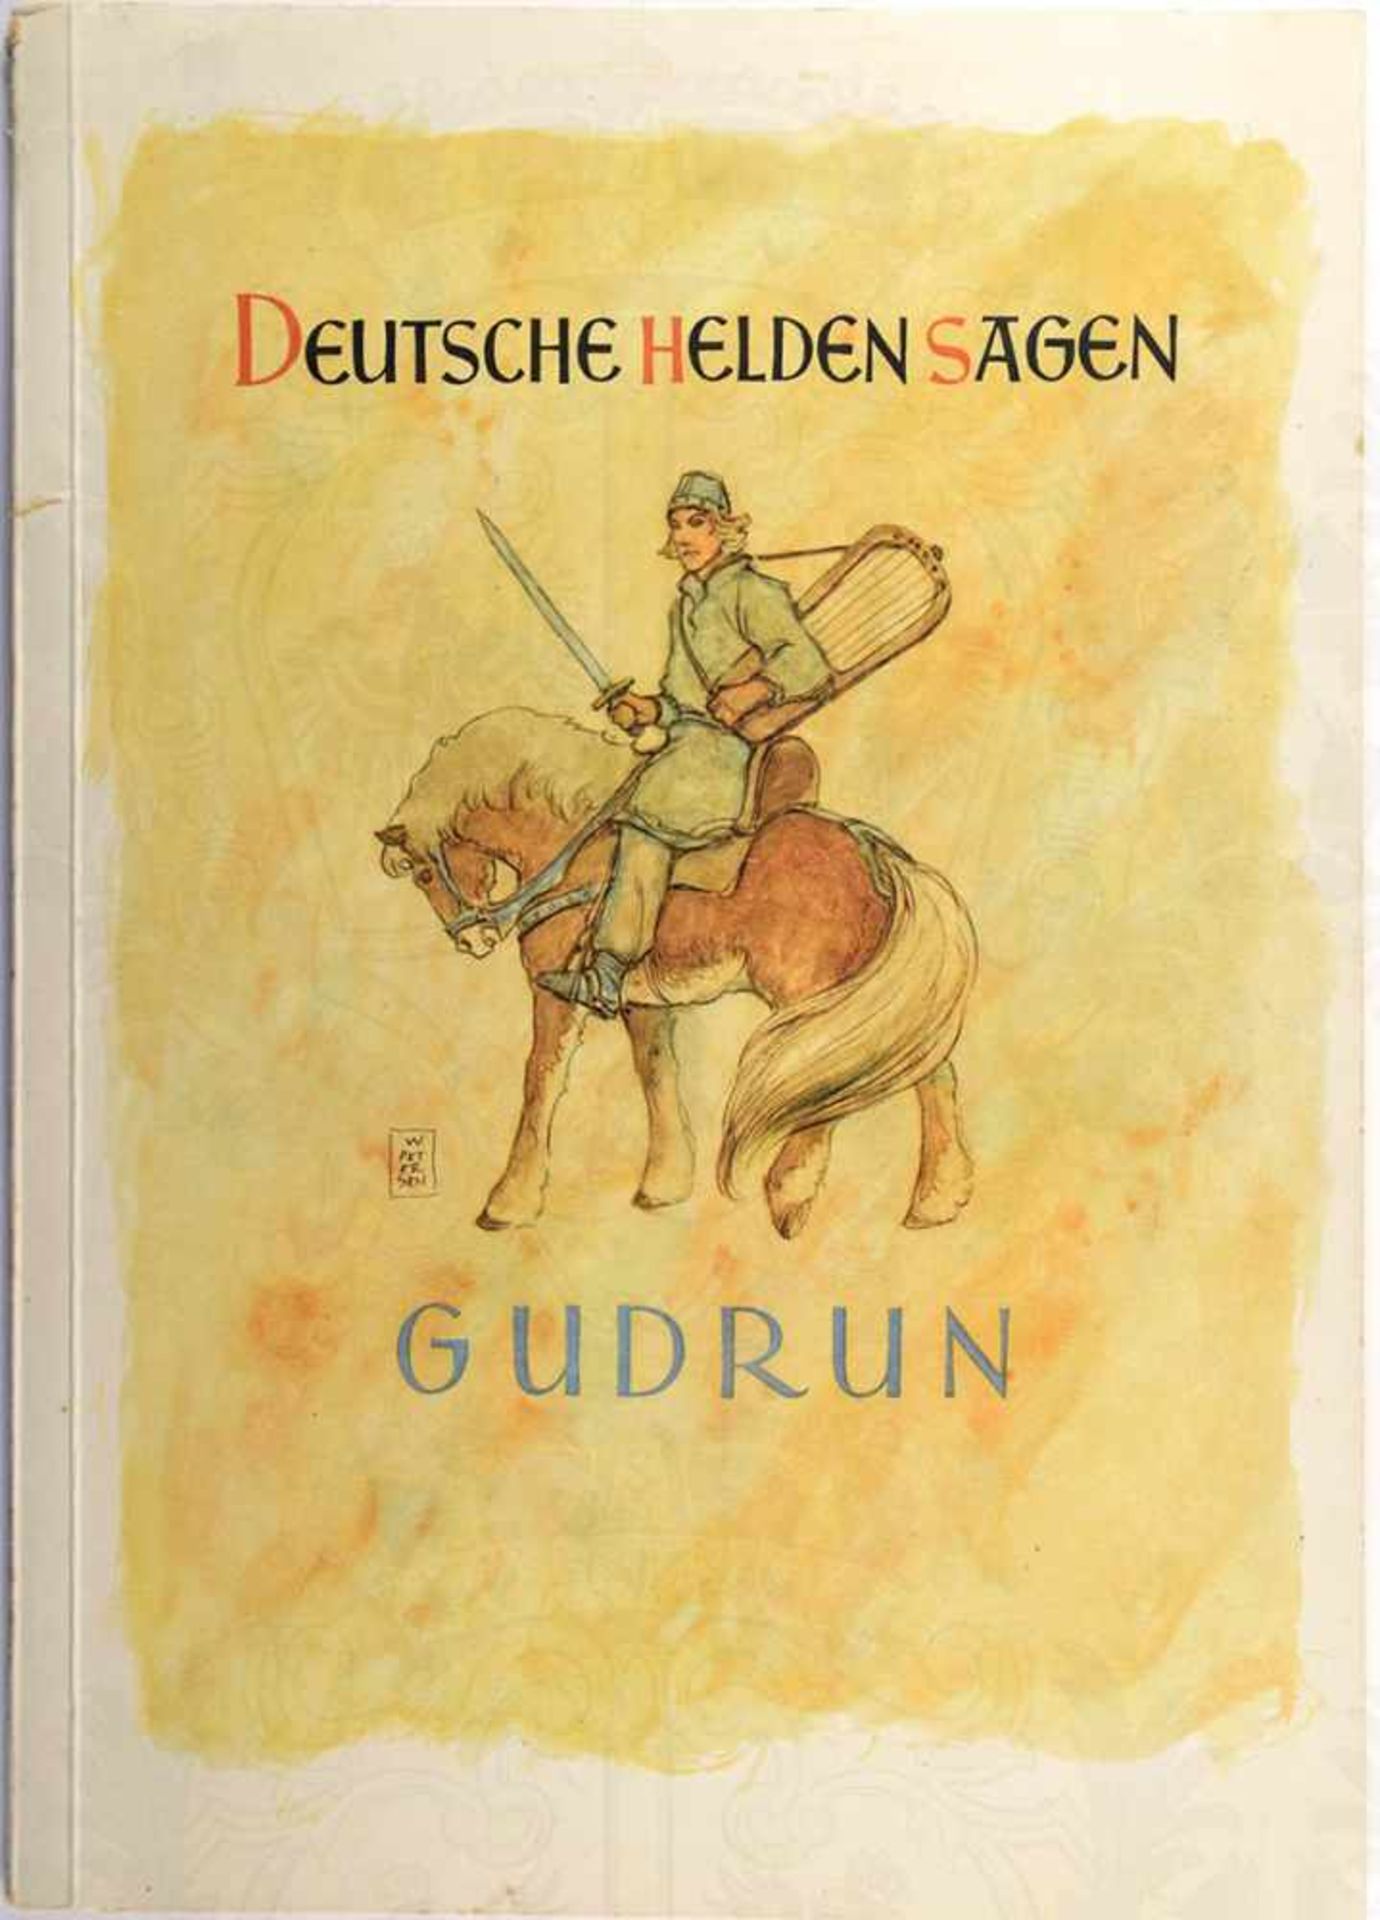 DEUTSCHE HELDENSAGEN - GUDRUN, Köllnflockenwerke, Elsmhorn 1953, 48 farb. Bilder, kpl., kart., A4